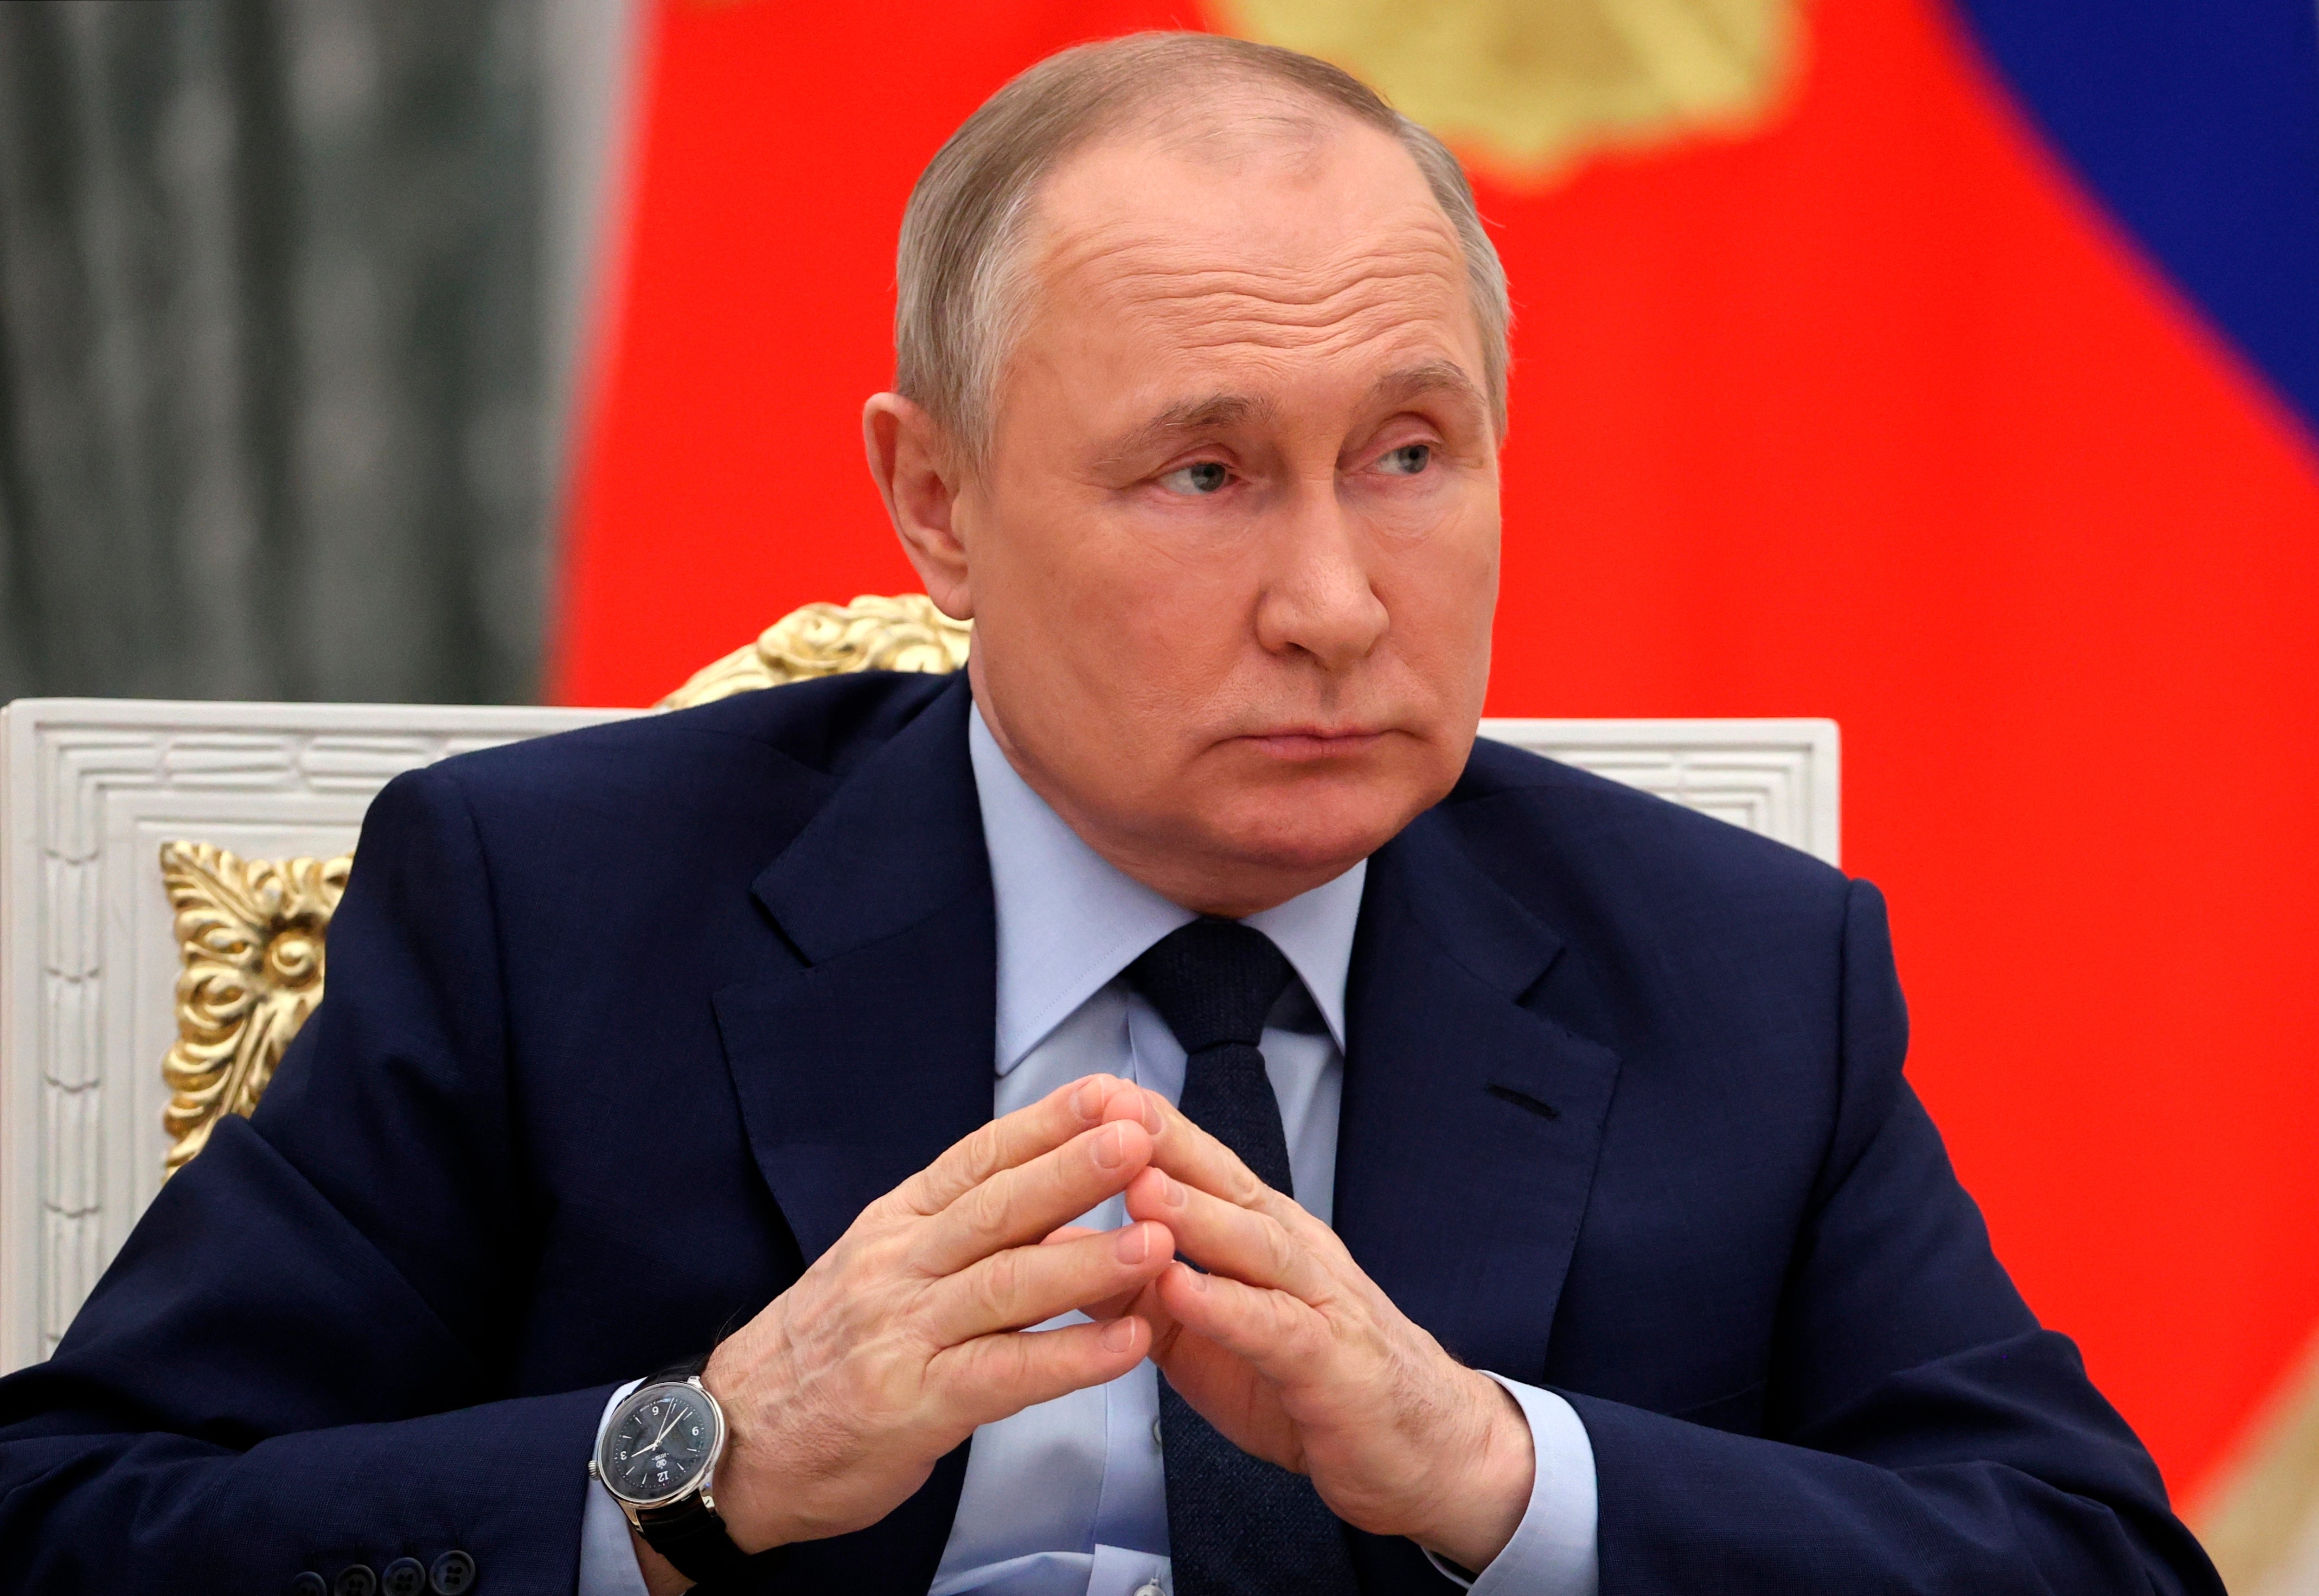 El presidente ruso Vladimir Putin durante una reunión en Moscú el miércoles